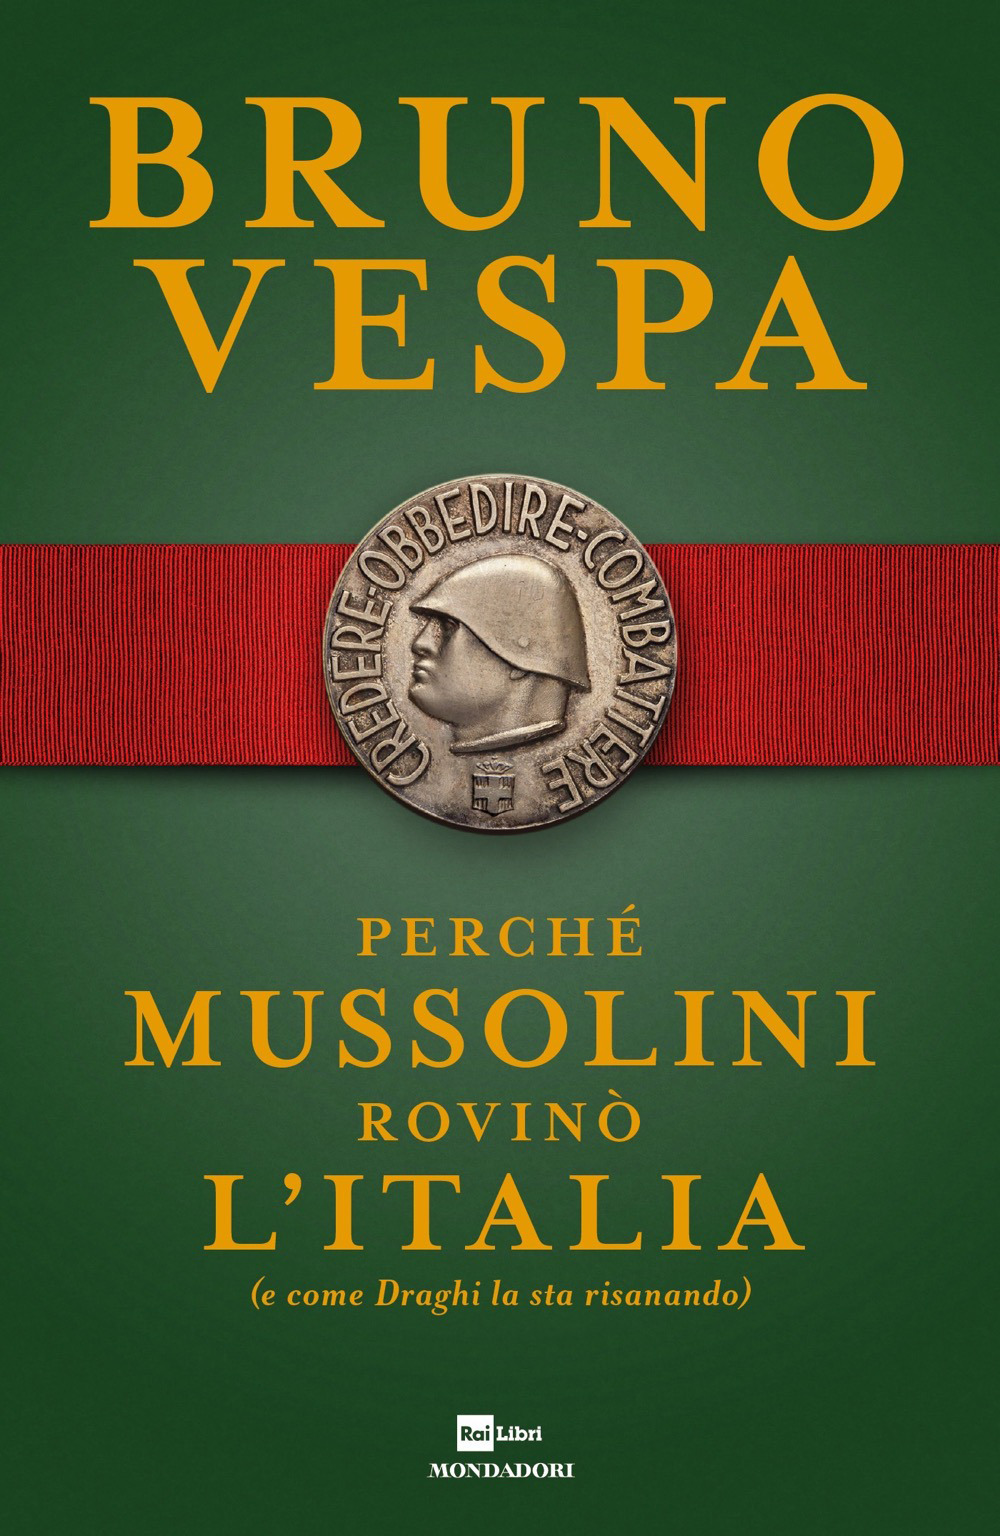 Libri Bruno Vespa - Perche Mussolini Rovino L'italia (E Come Draghi La Sta Risanando) NUOVO SIGILLATO, EDIZIONE DEL 03/11/2021 SUBITO DISPONIBILE